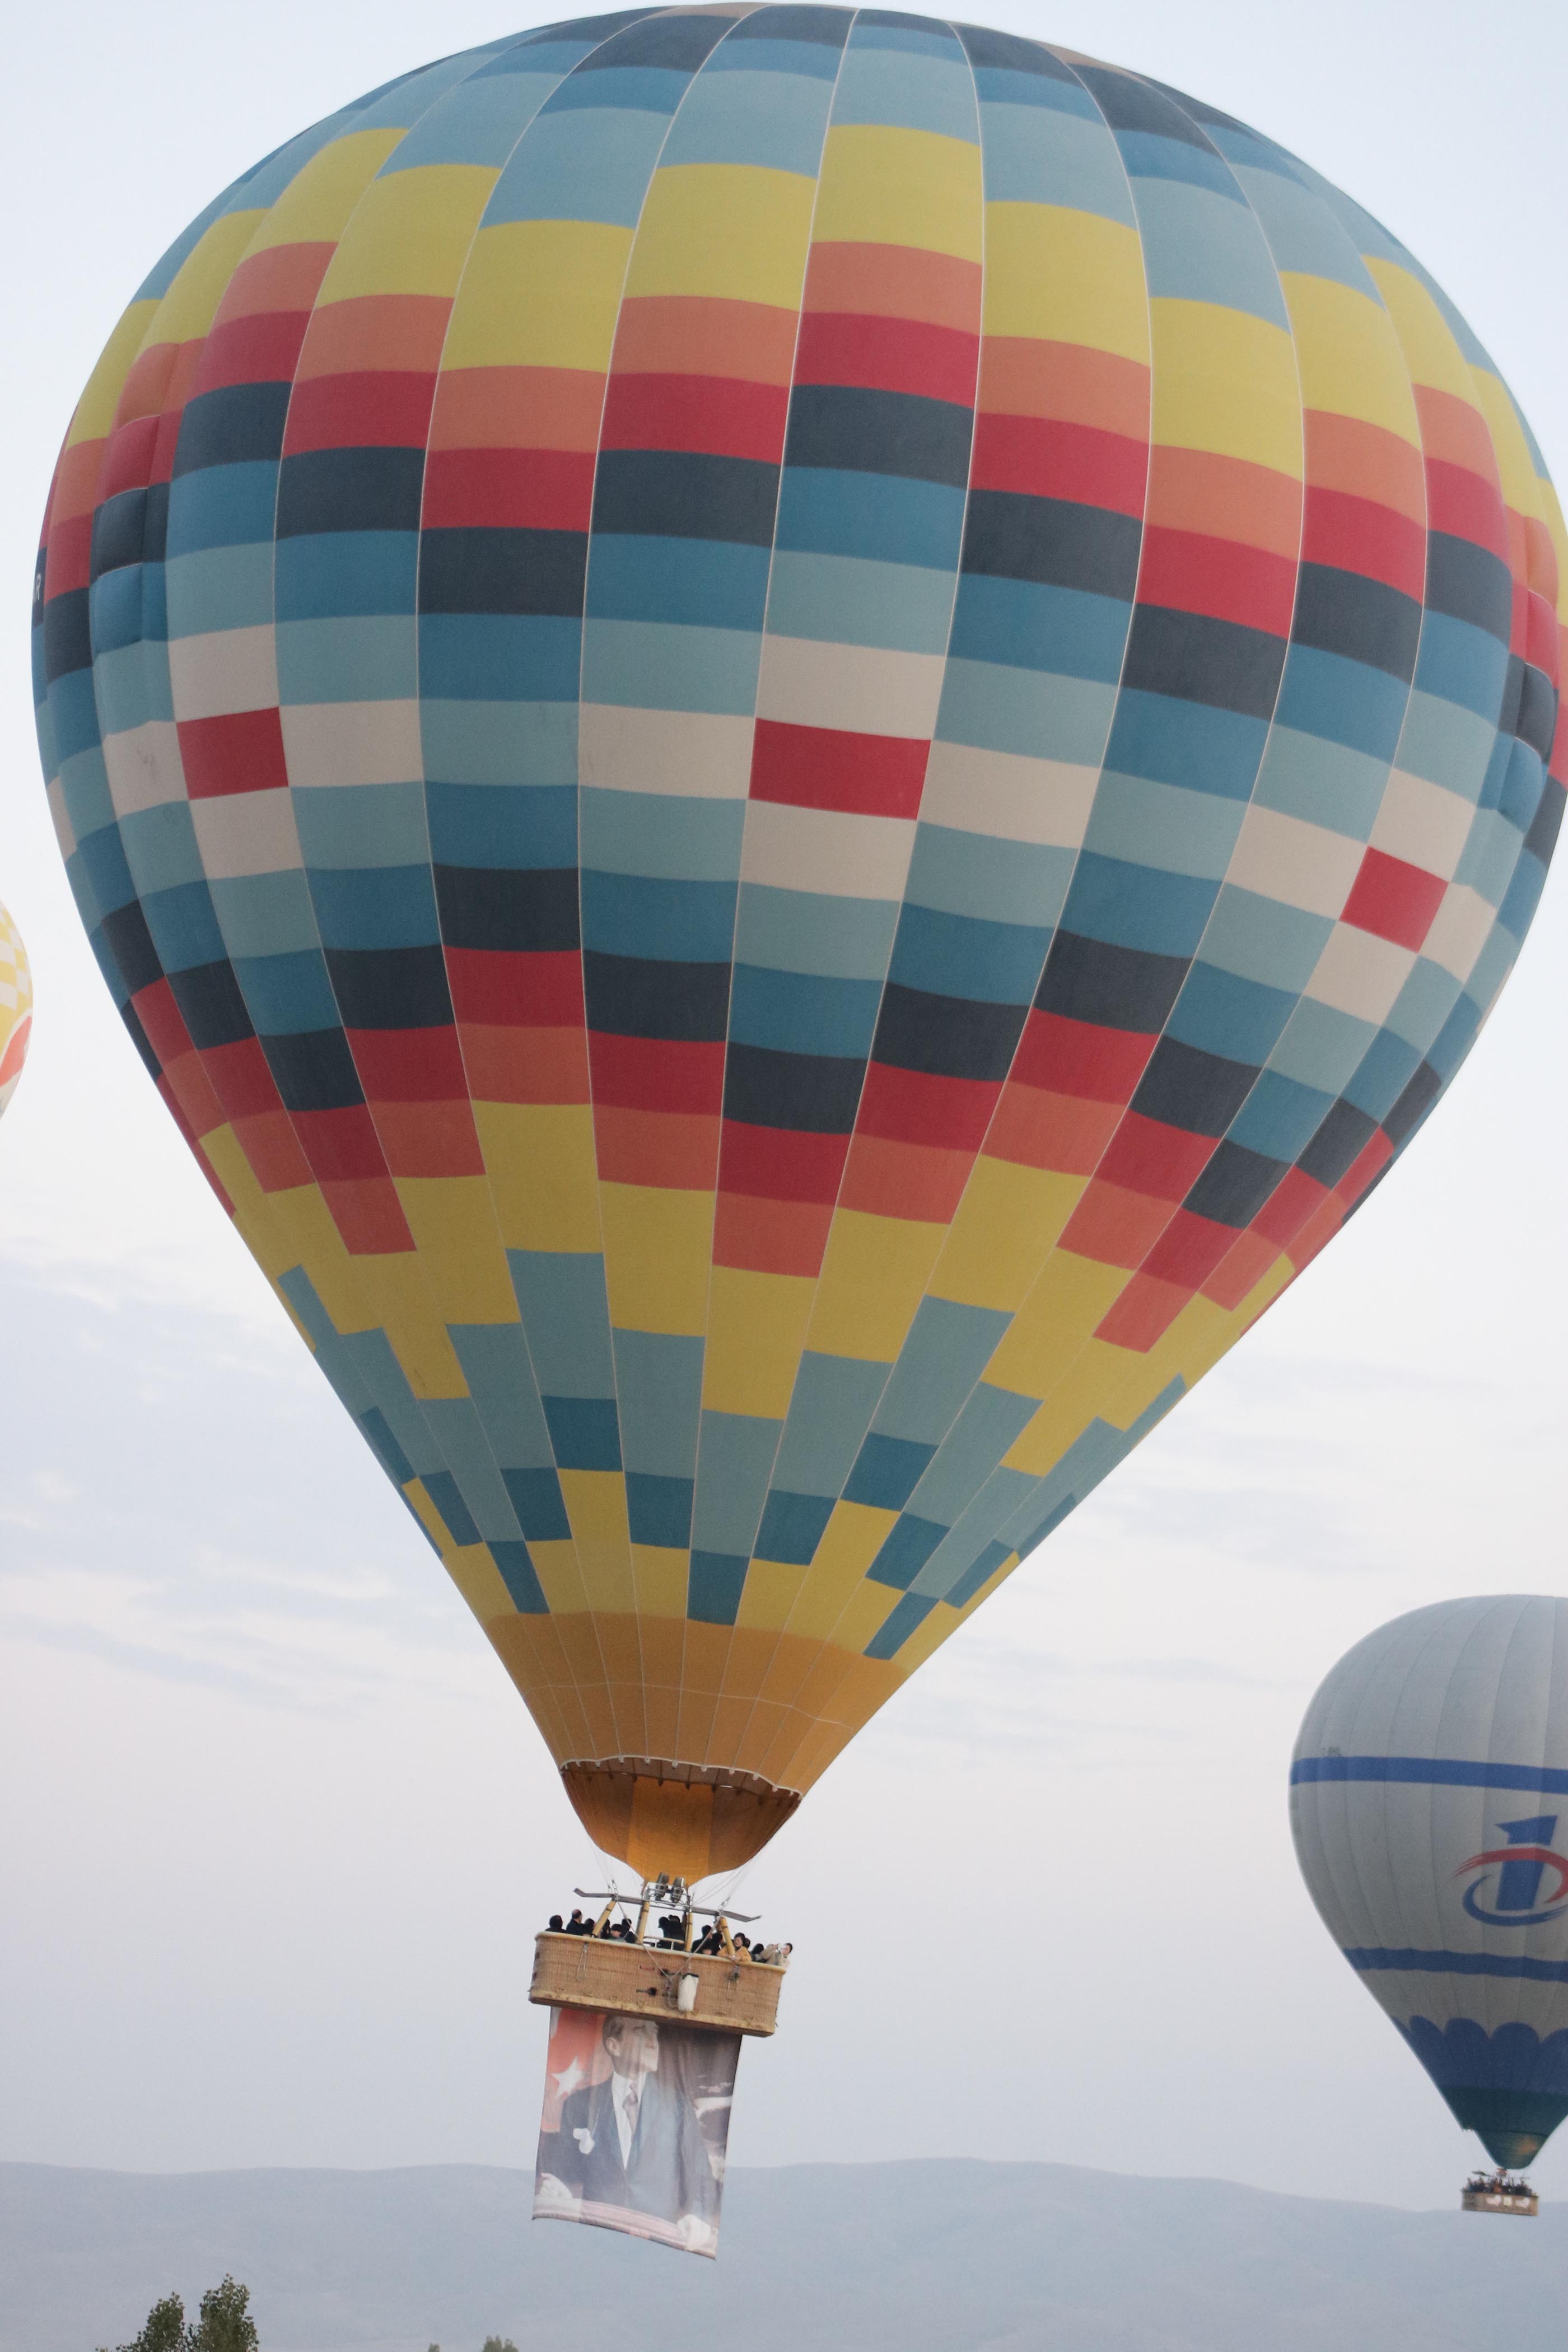 sicak-hava-balonlari-ataturk-posterleri-ve-turk-bayraklariyla-havalandi-3415-dhaphoto7.jpg